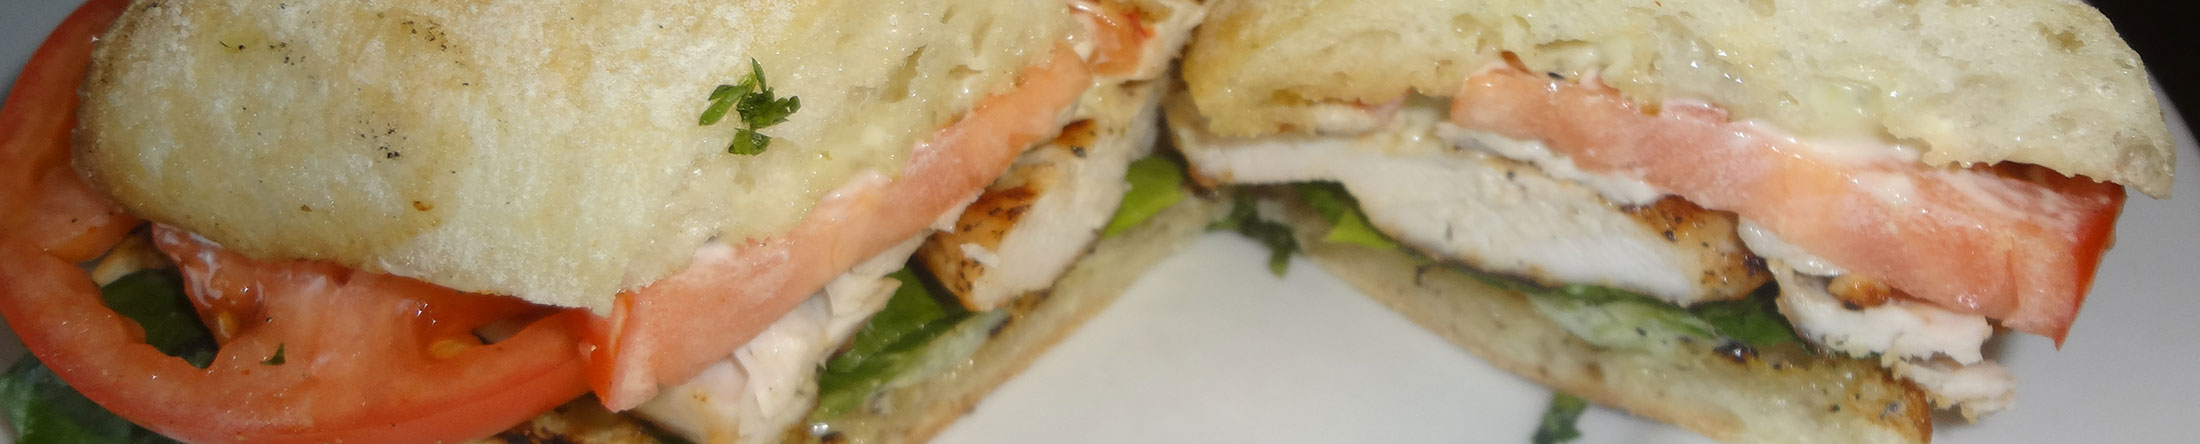 Grilled Chicken Sandwich at Kisamos Greek Taverna